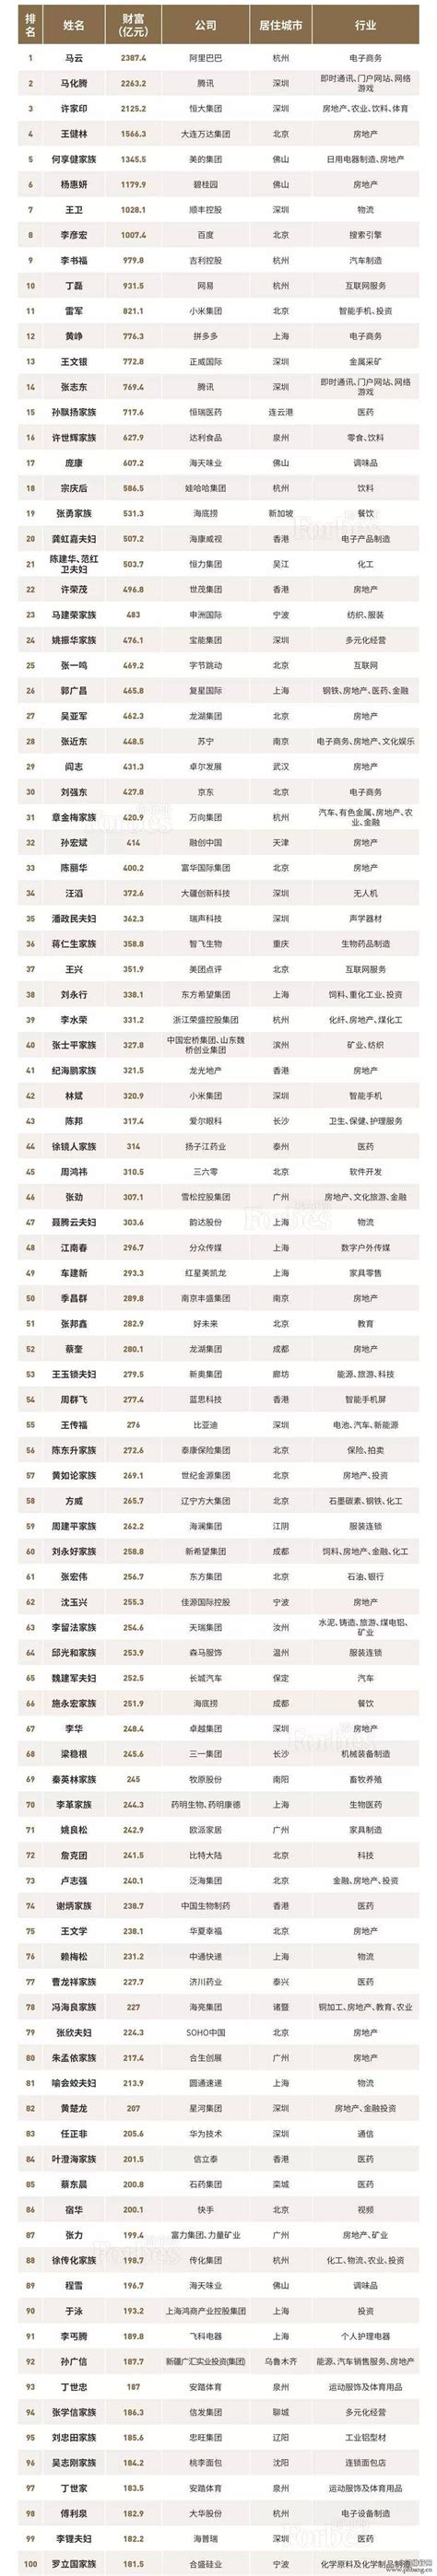 2018福布斯中国富豪榜TOP100排名_排行榜